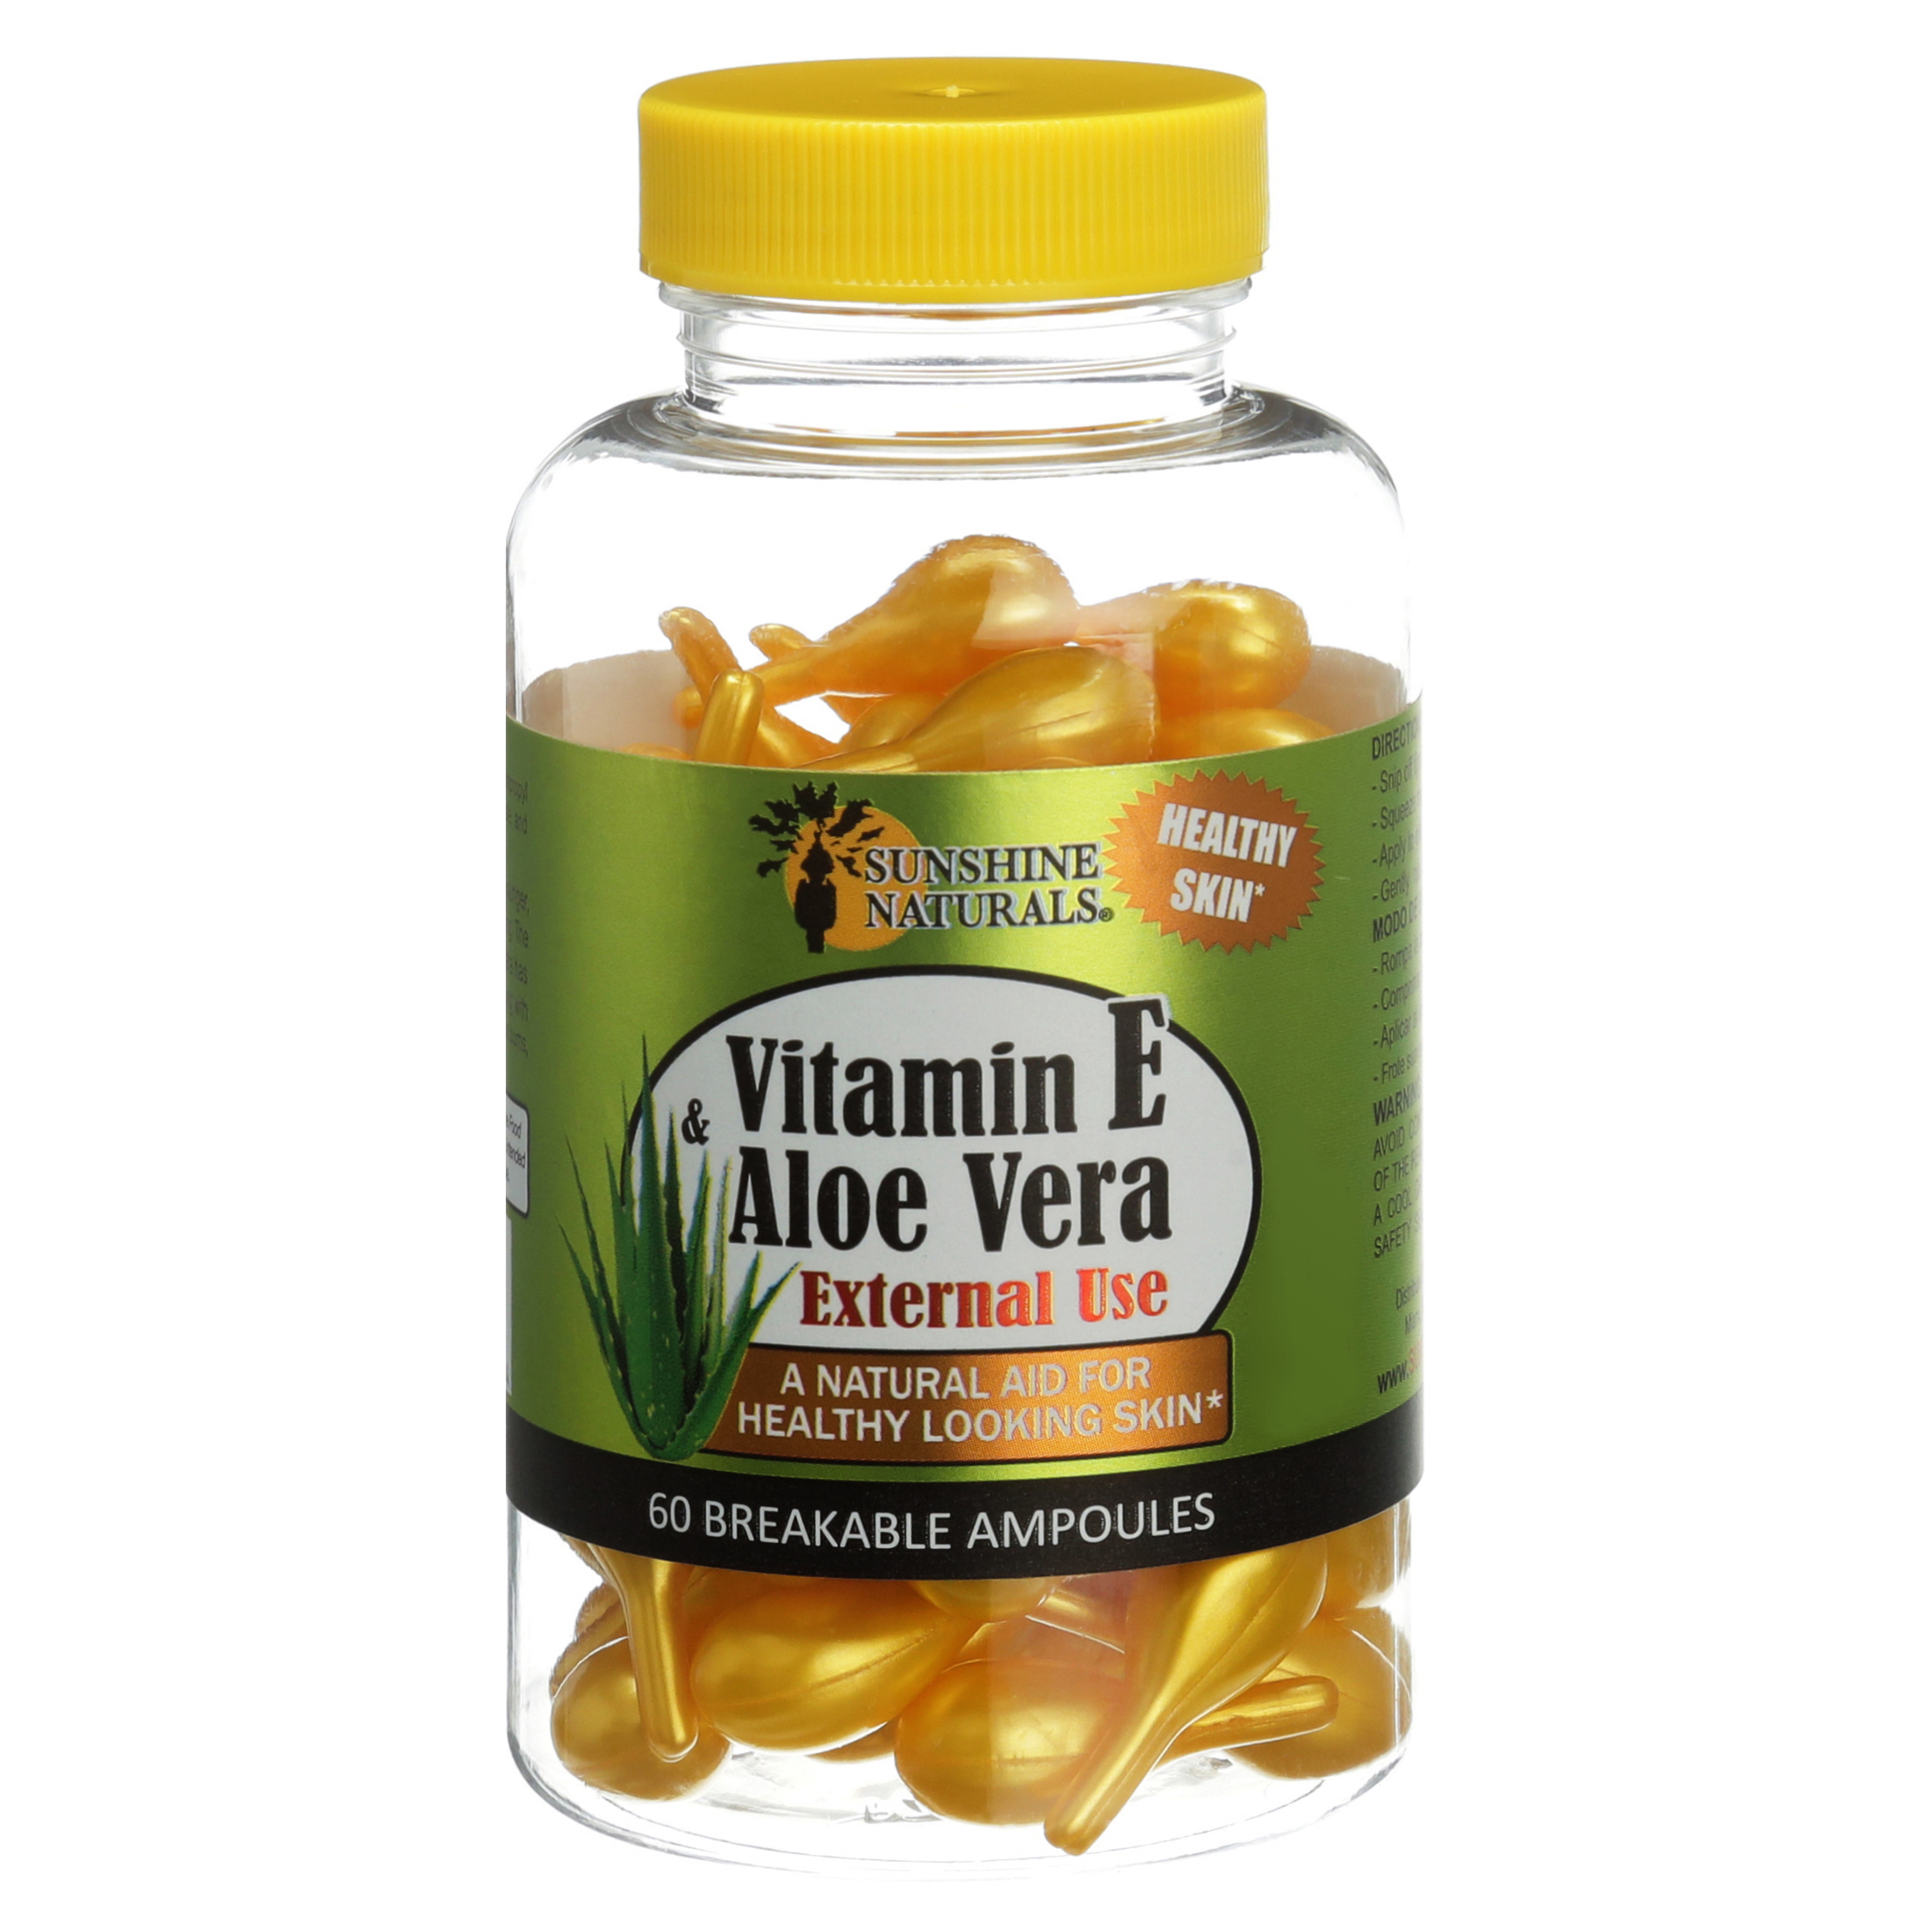 60 Sunshine Naturals Vitamin E & Aloe Vera Ampoules